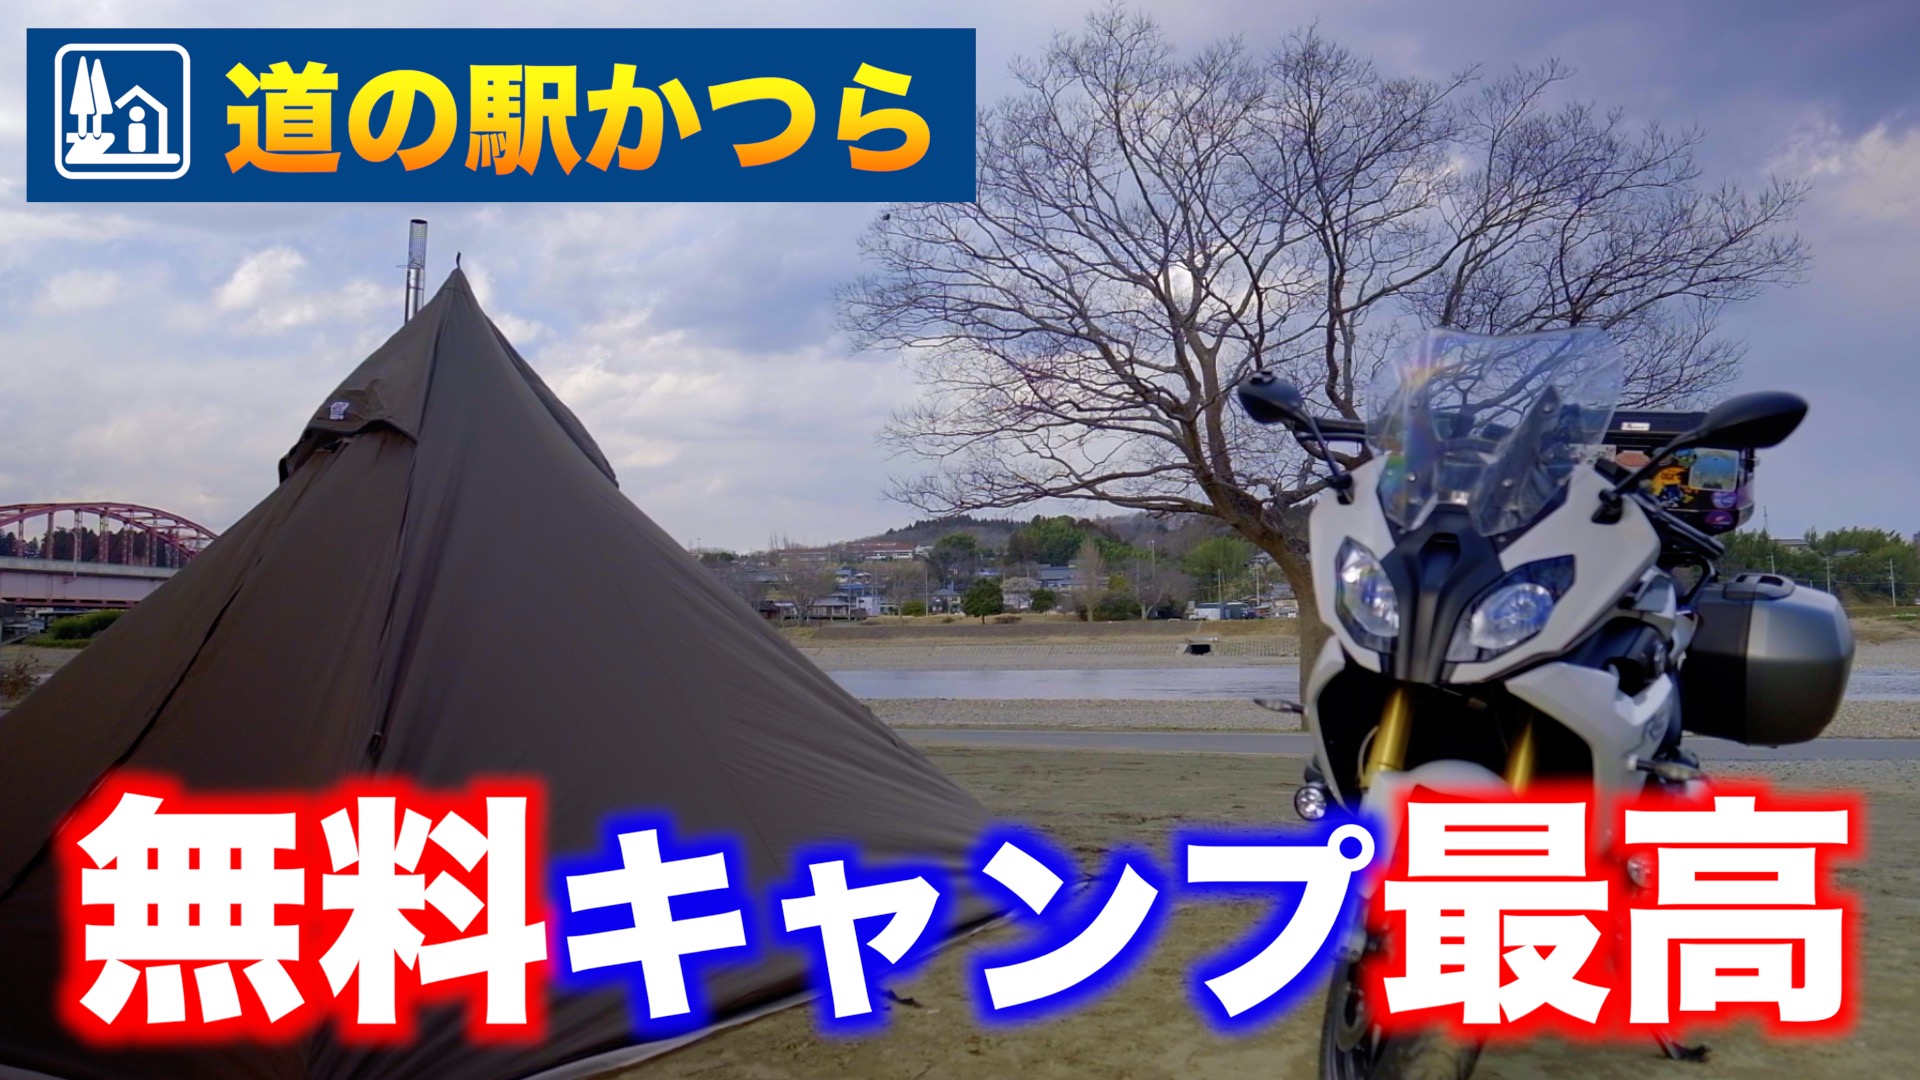 キャンプ場レポート 茨城県 道の駅かつら 隣接 人気の無料キャンプ場に行ってきた ハレノチバイクブログ